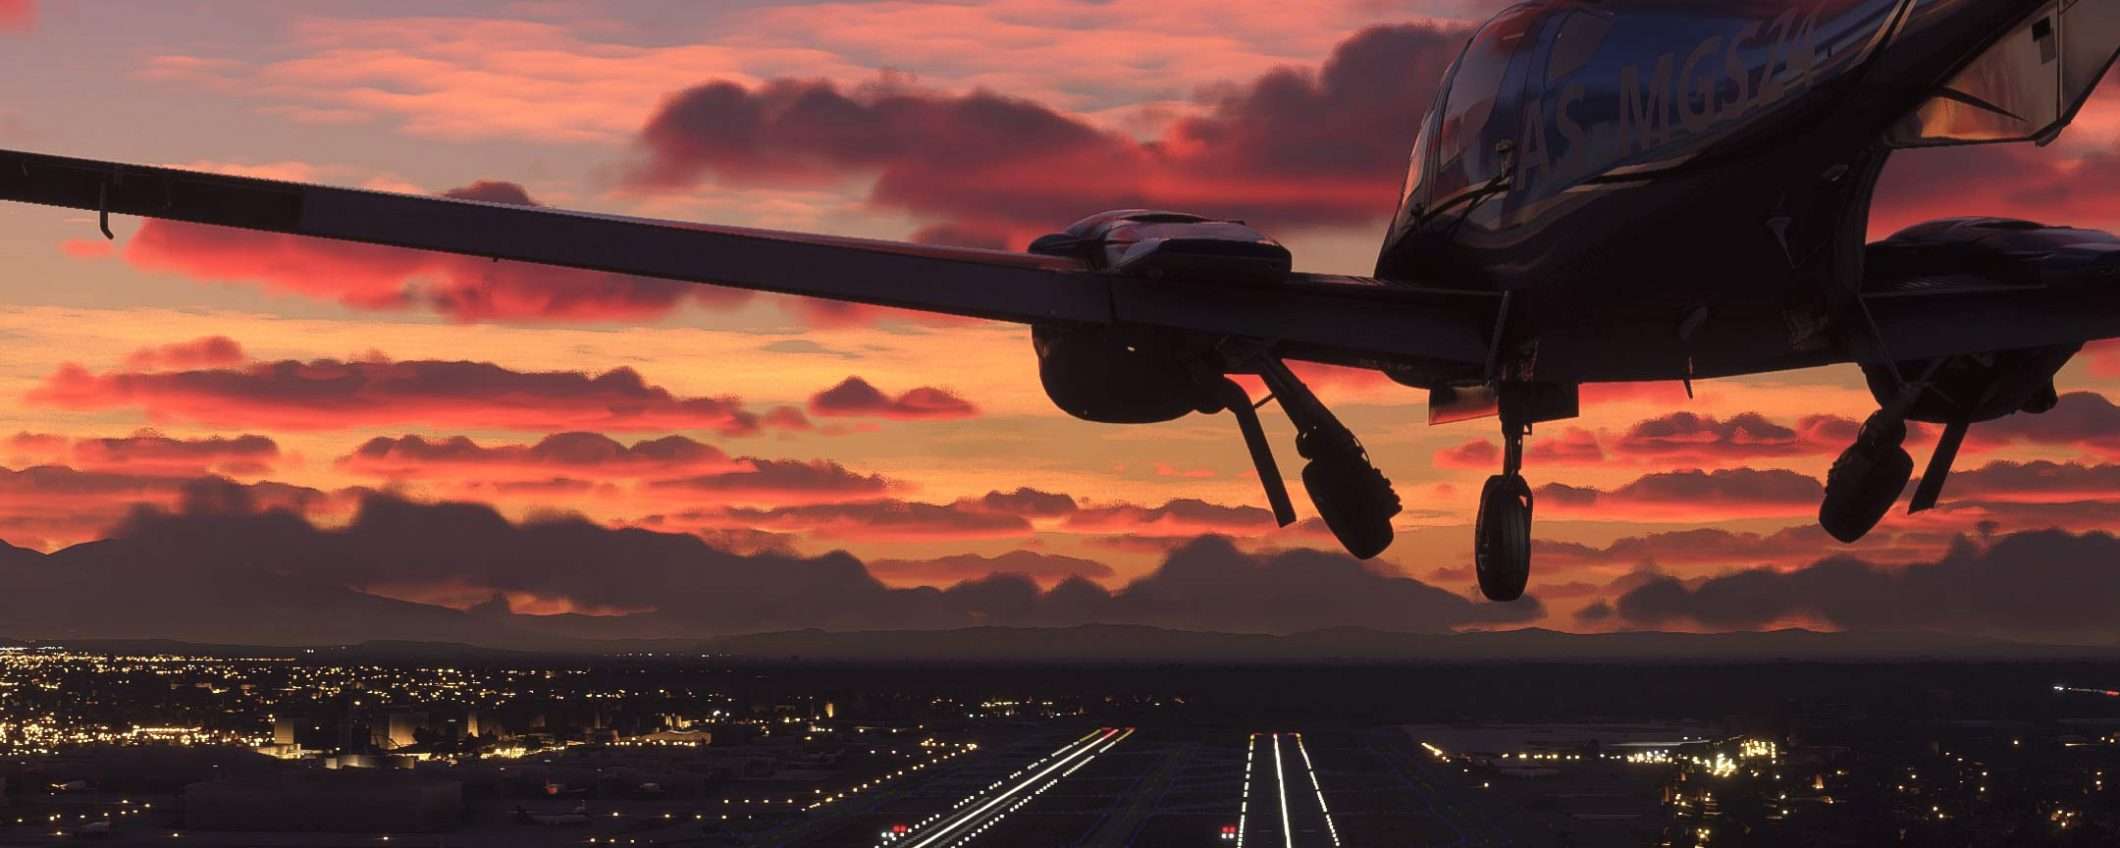 Flight Simulator ritorna grazie a Bing e al cloud